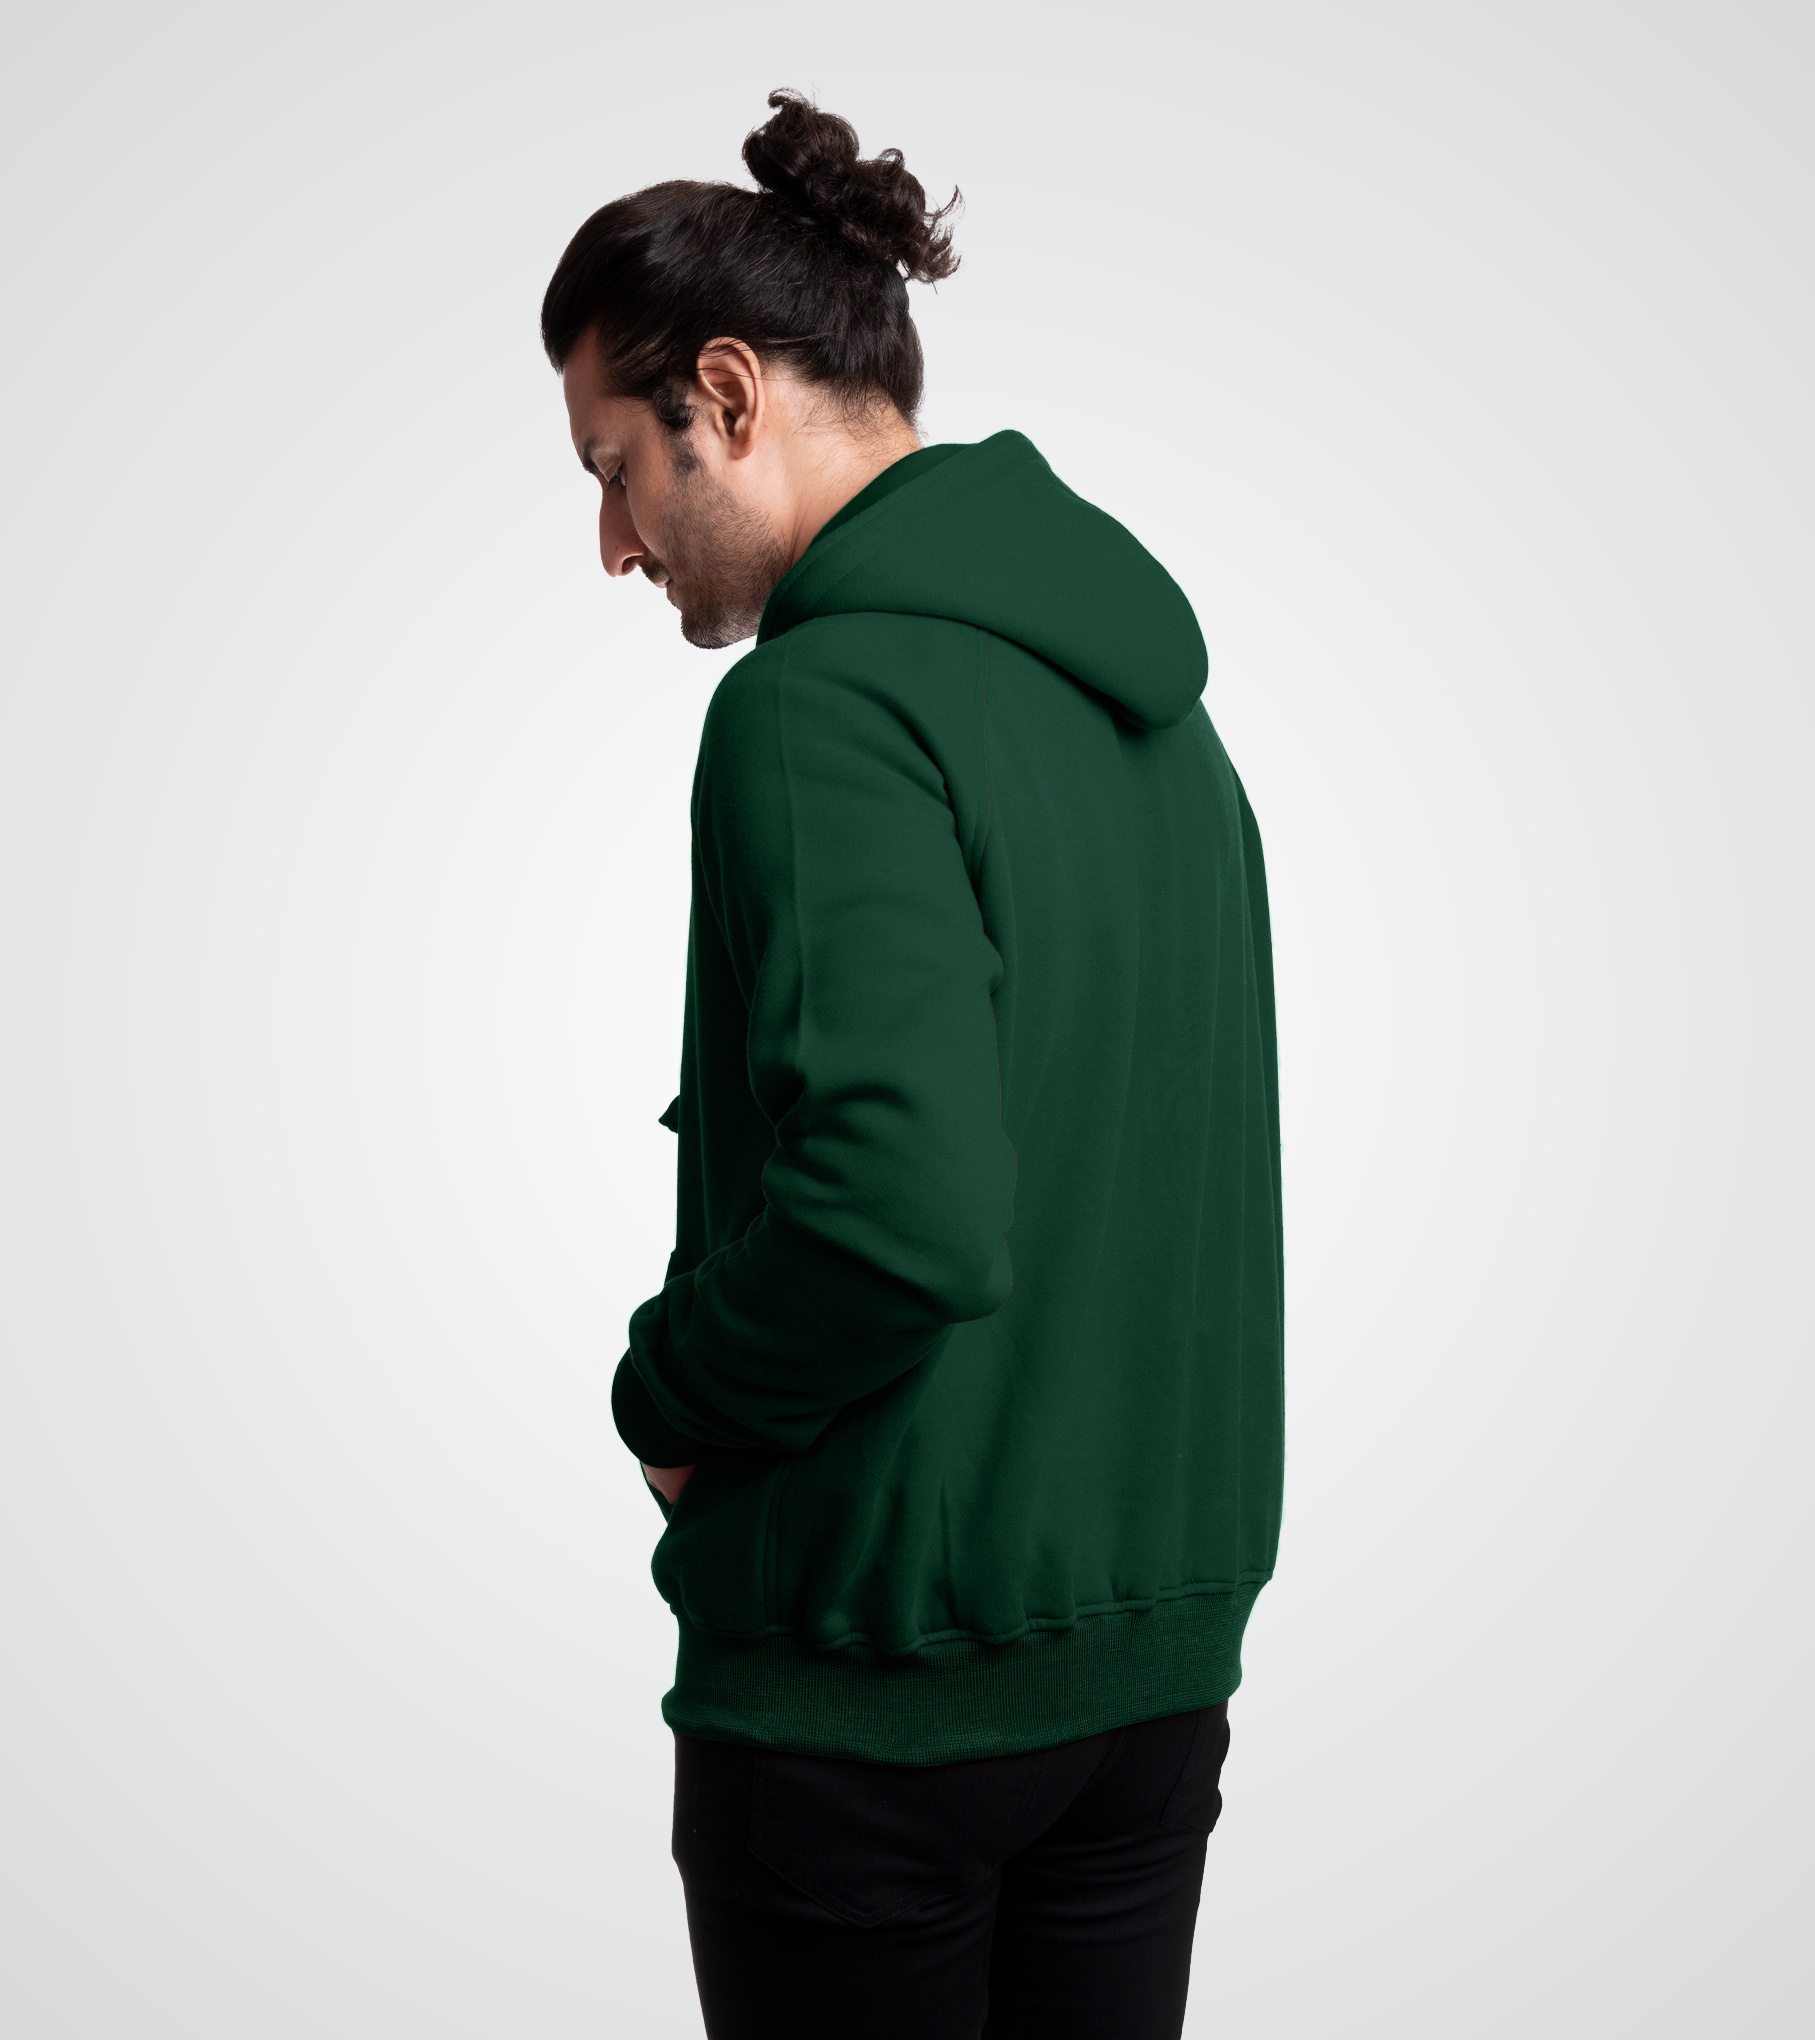 Forest Green Custom Zip Up Sweatshirt